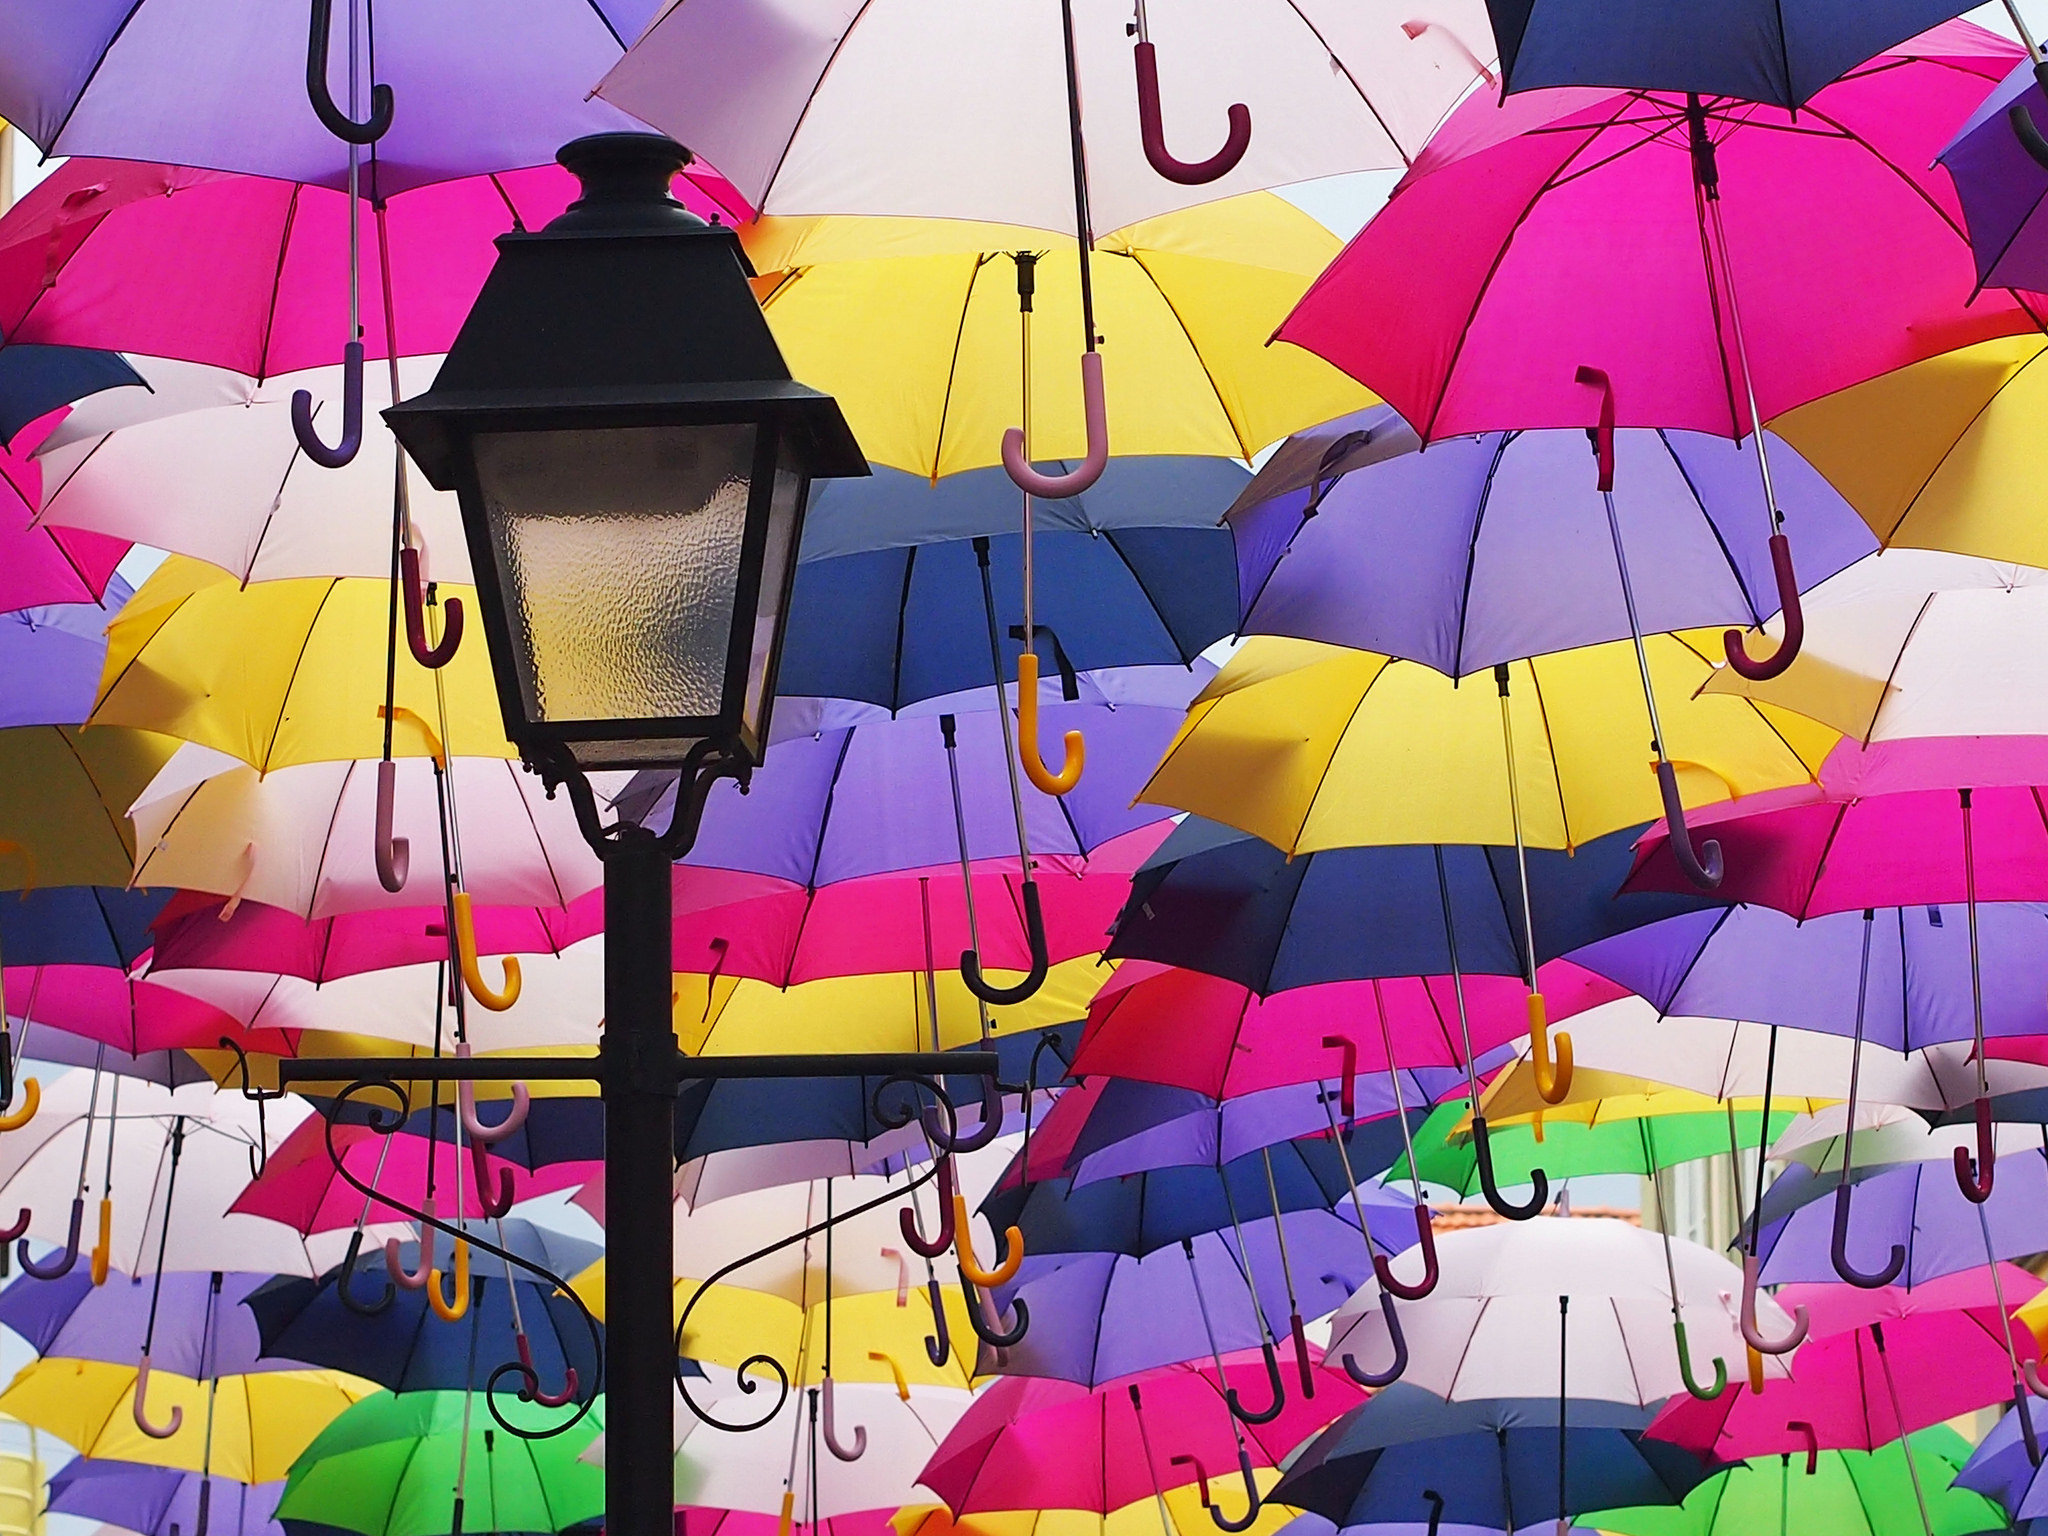 Зонтики 10. Улица парящих зонтиков, Агеда, Португалия. Разноцветные зонтики. Разноцветный зонт. Зонтики яркие.